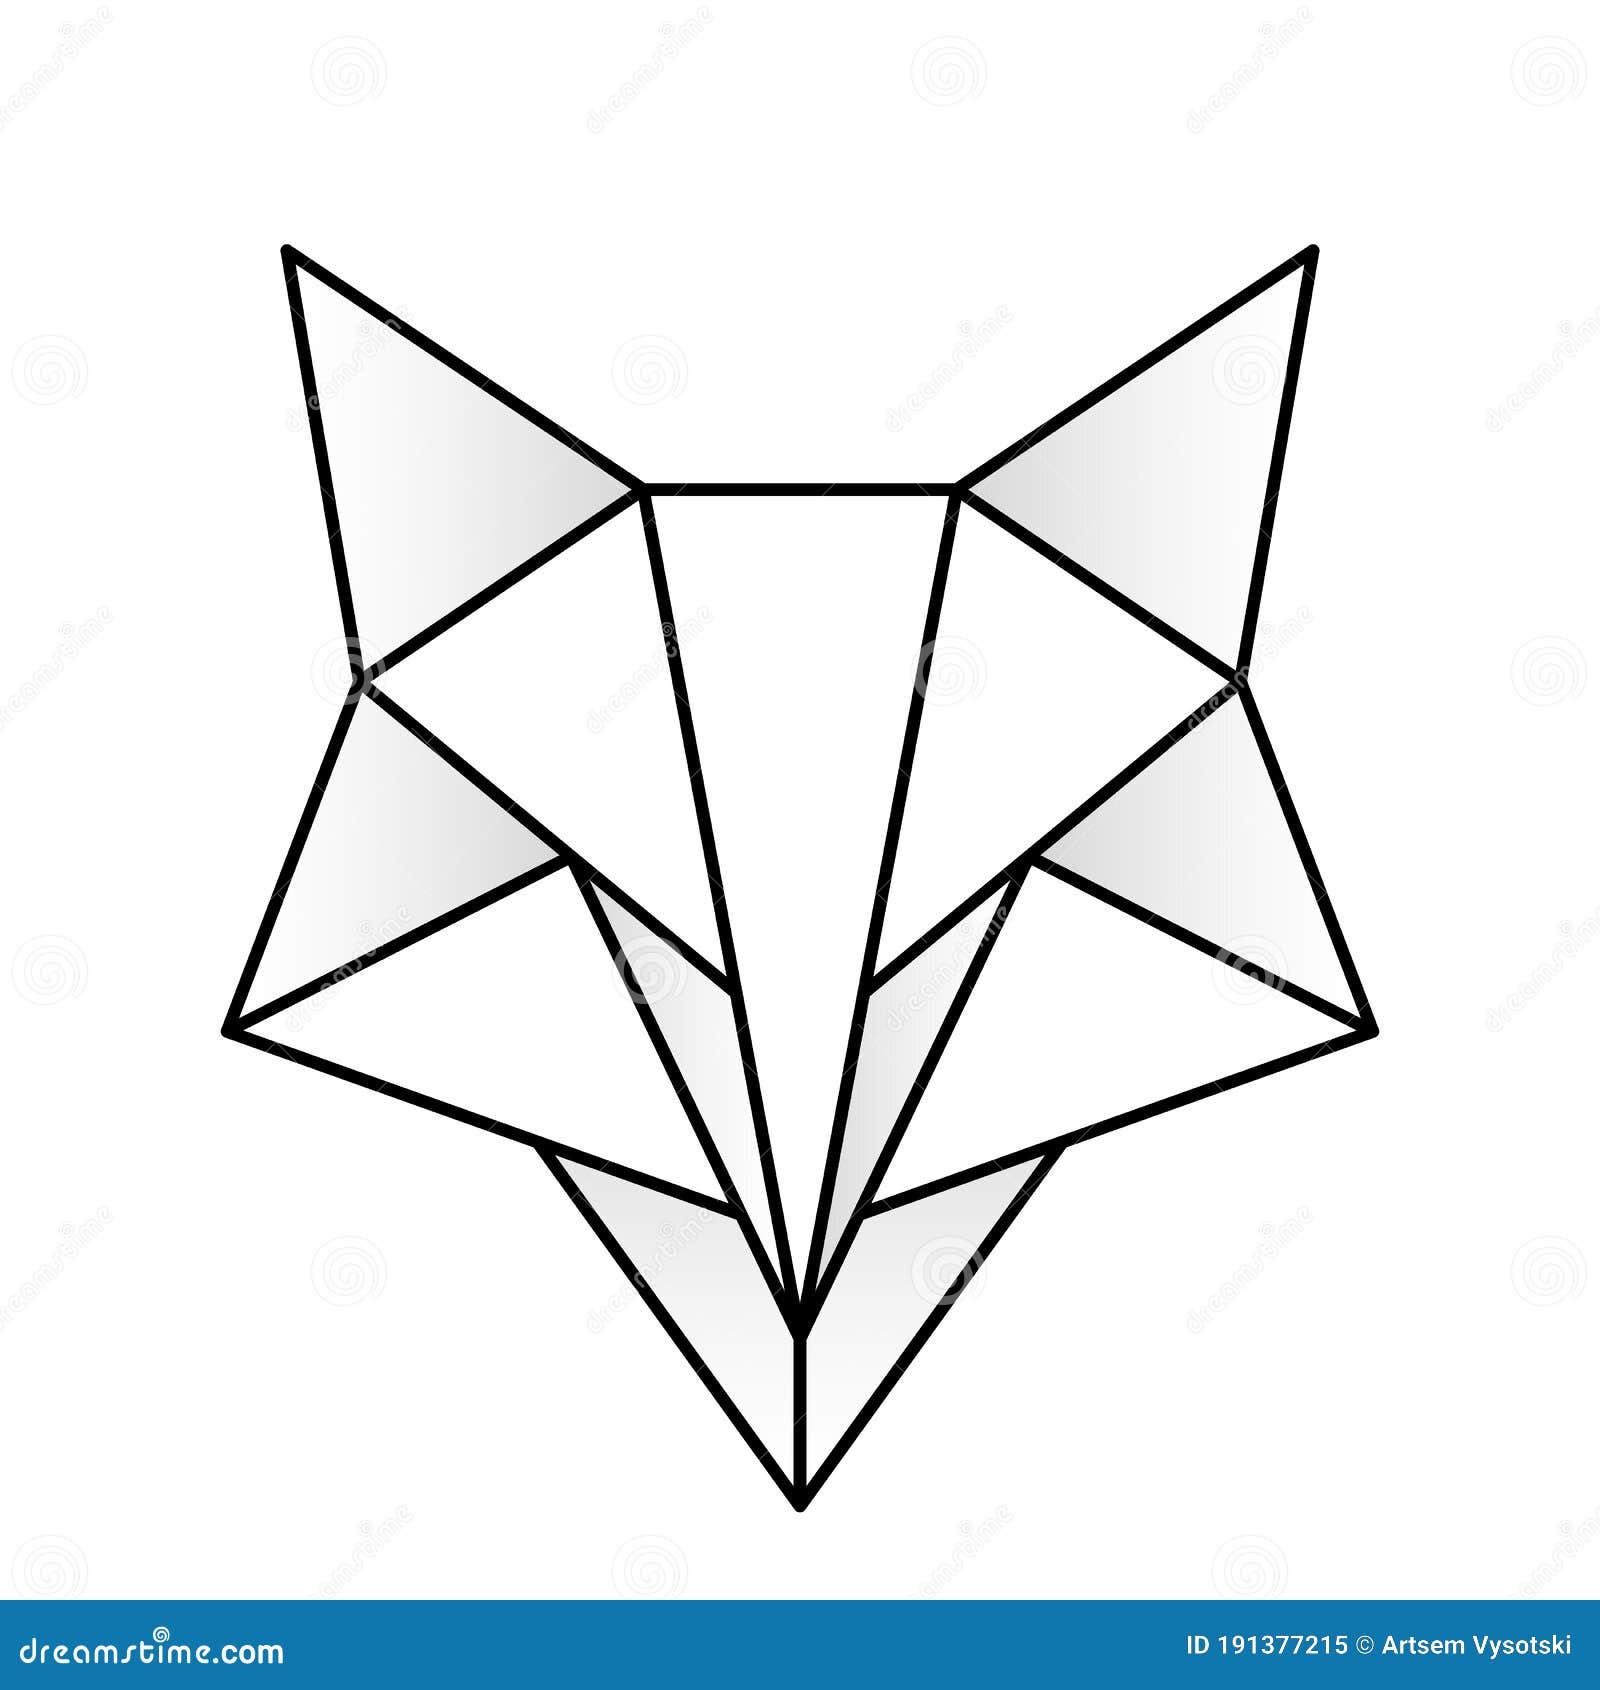 Resultado de imagen de polygon tattoo  Geometry tattoo Surreal tattoo  Geometric dog tattoo